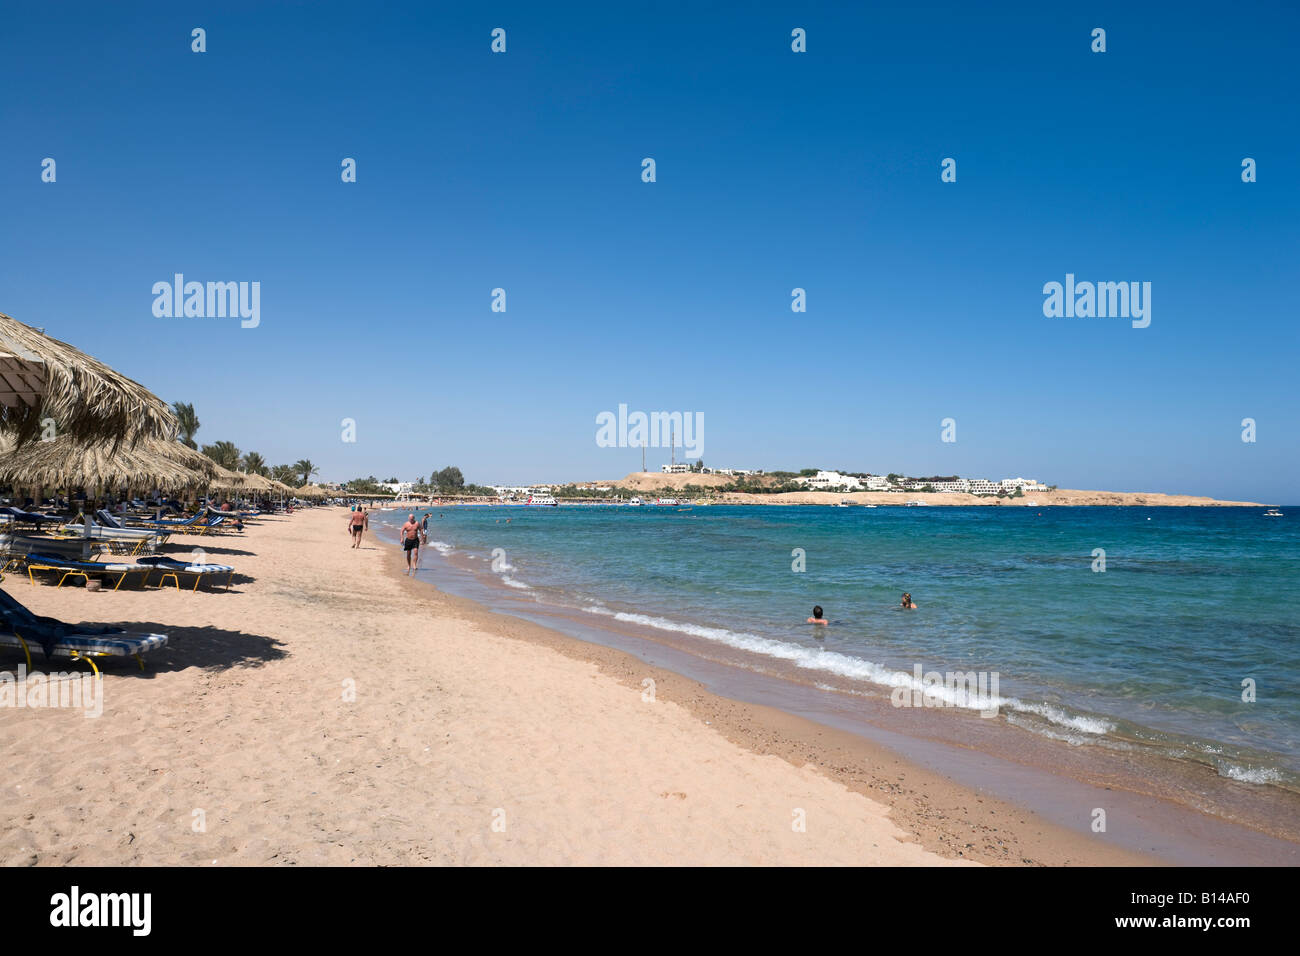 La playa de la Bahía de Naama, Sharm el-Sheikh, en la costa del Mar Rojo, al sur del Sinaí, Egipto Foto de stock